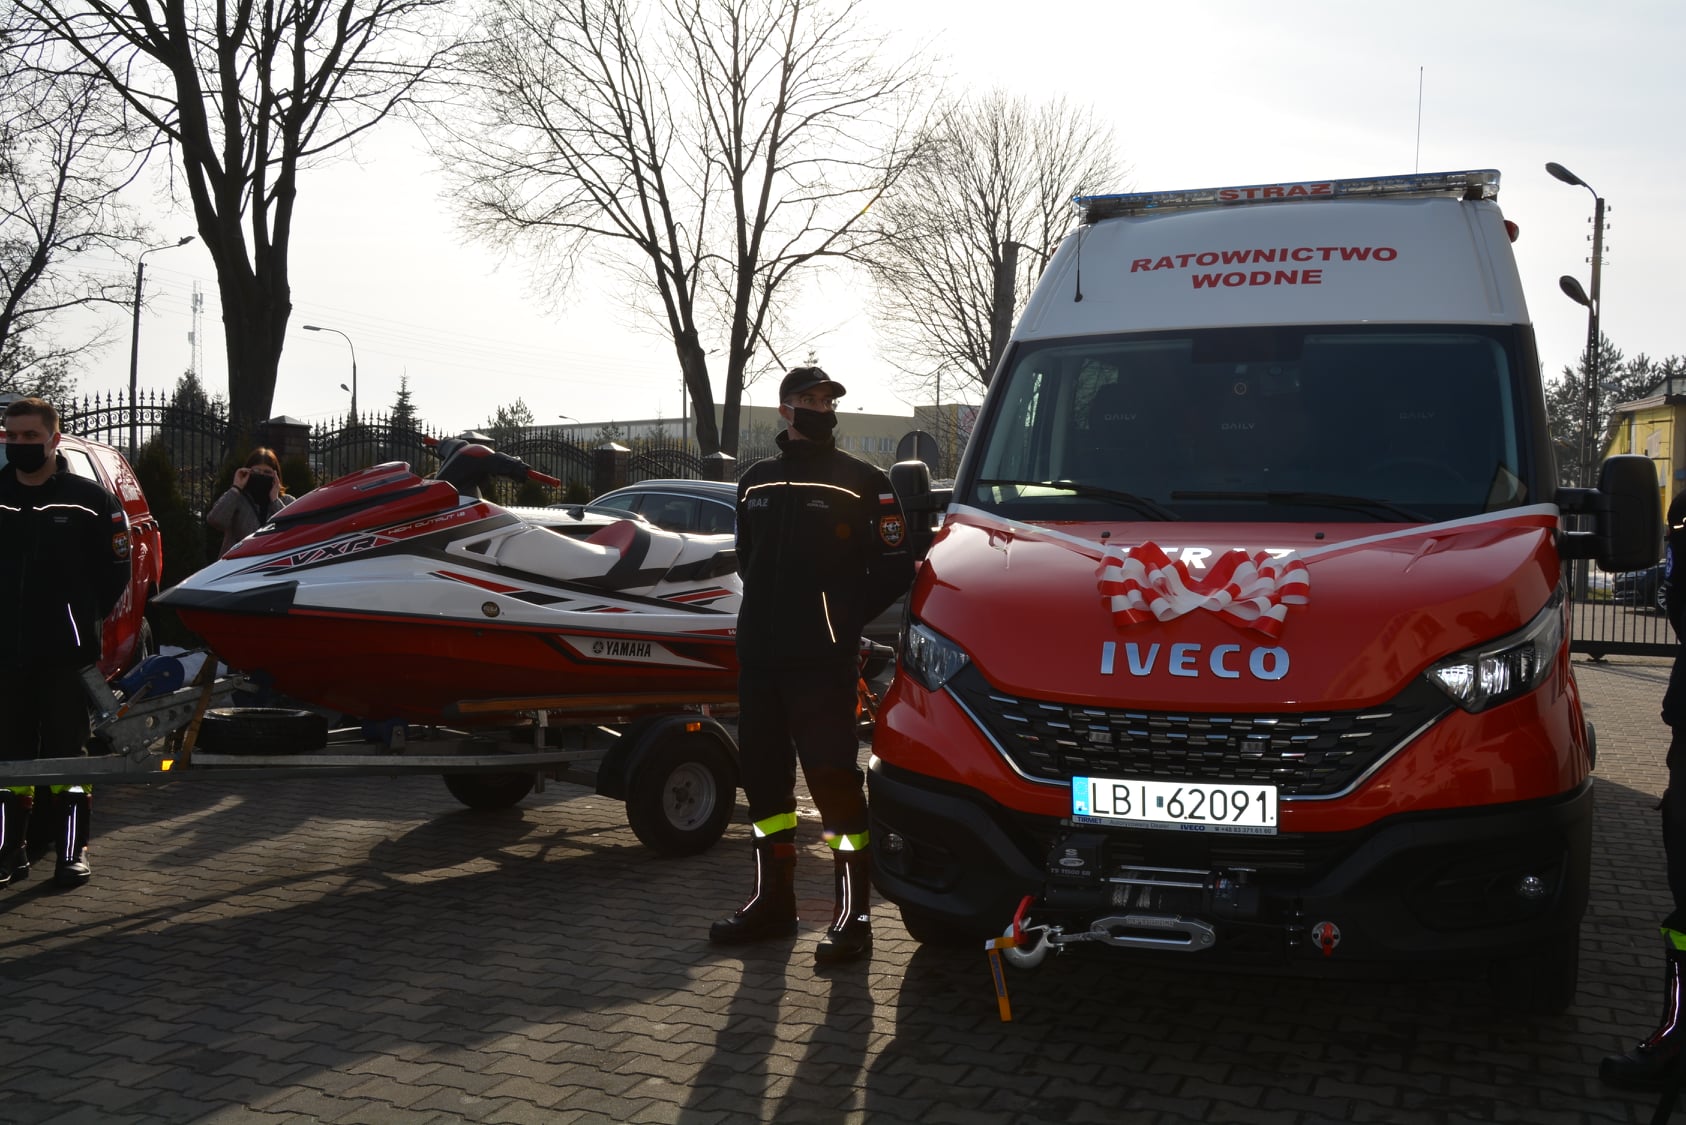 Strażacy otrzymali nowy samochód przeznaczony do ratownictwa wodnego (zdjęcia)